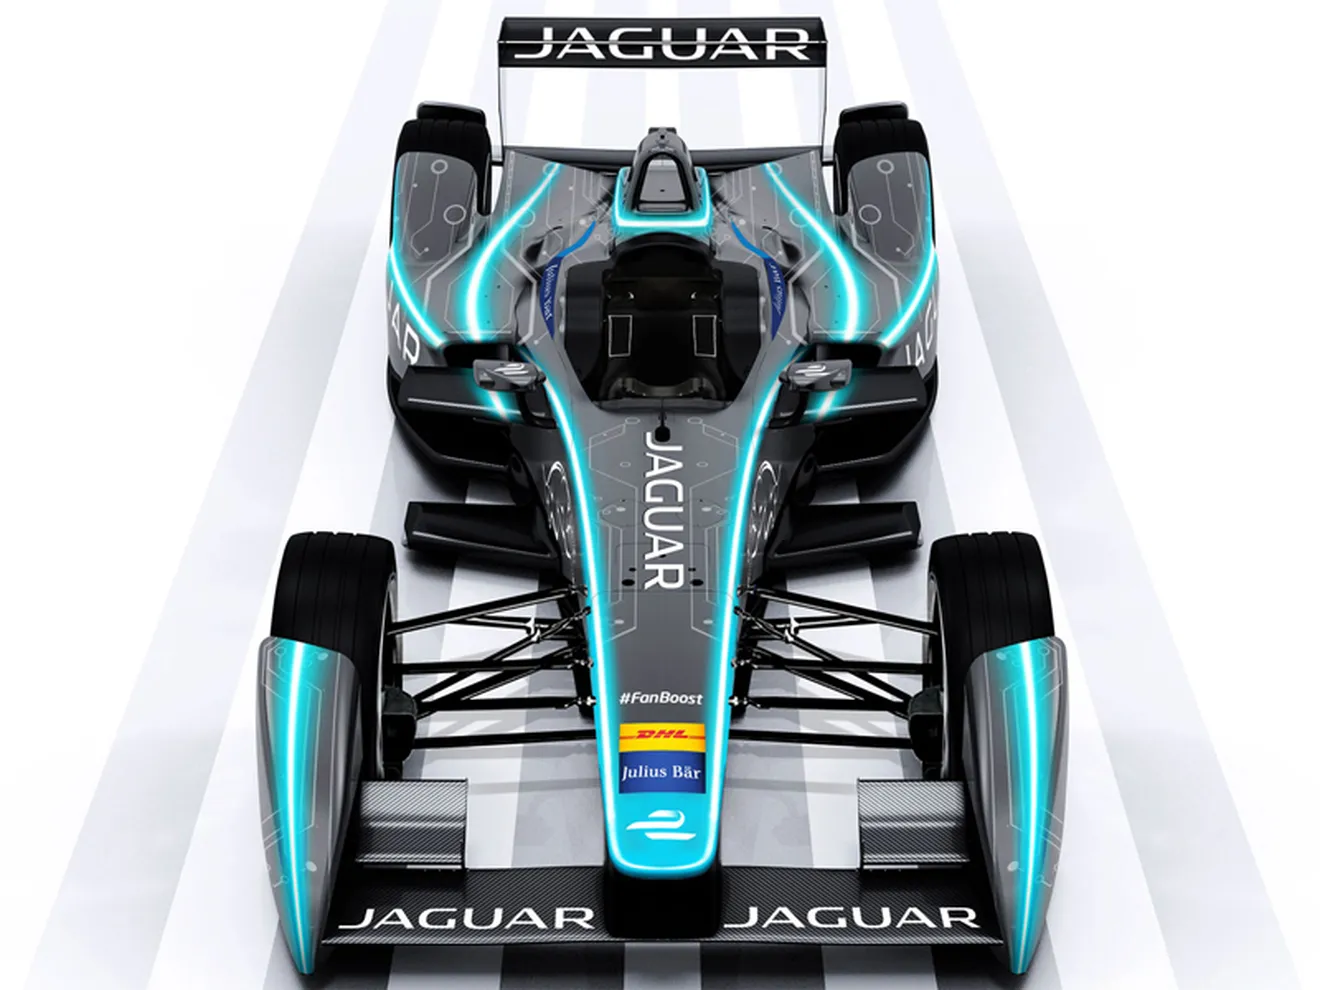 Jaguar desvelará su Fórmula E en el ePrix de Londres